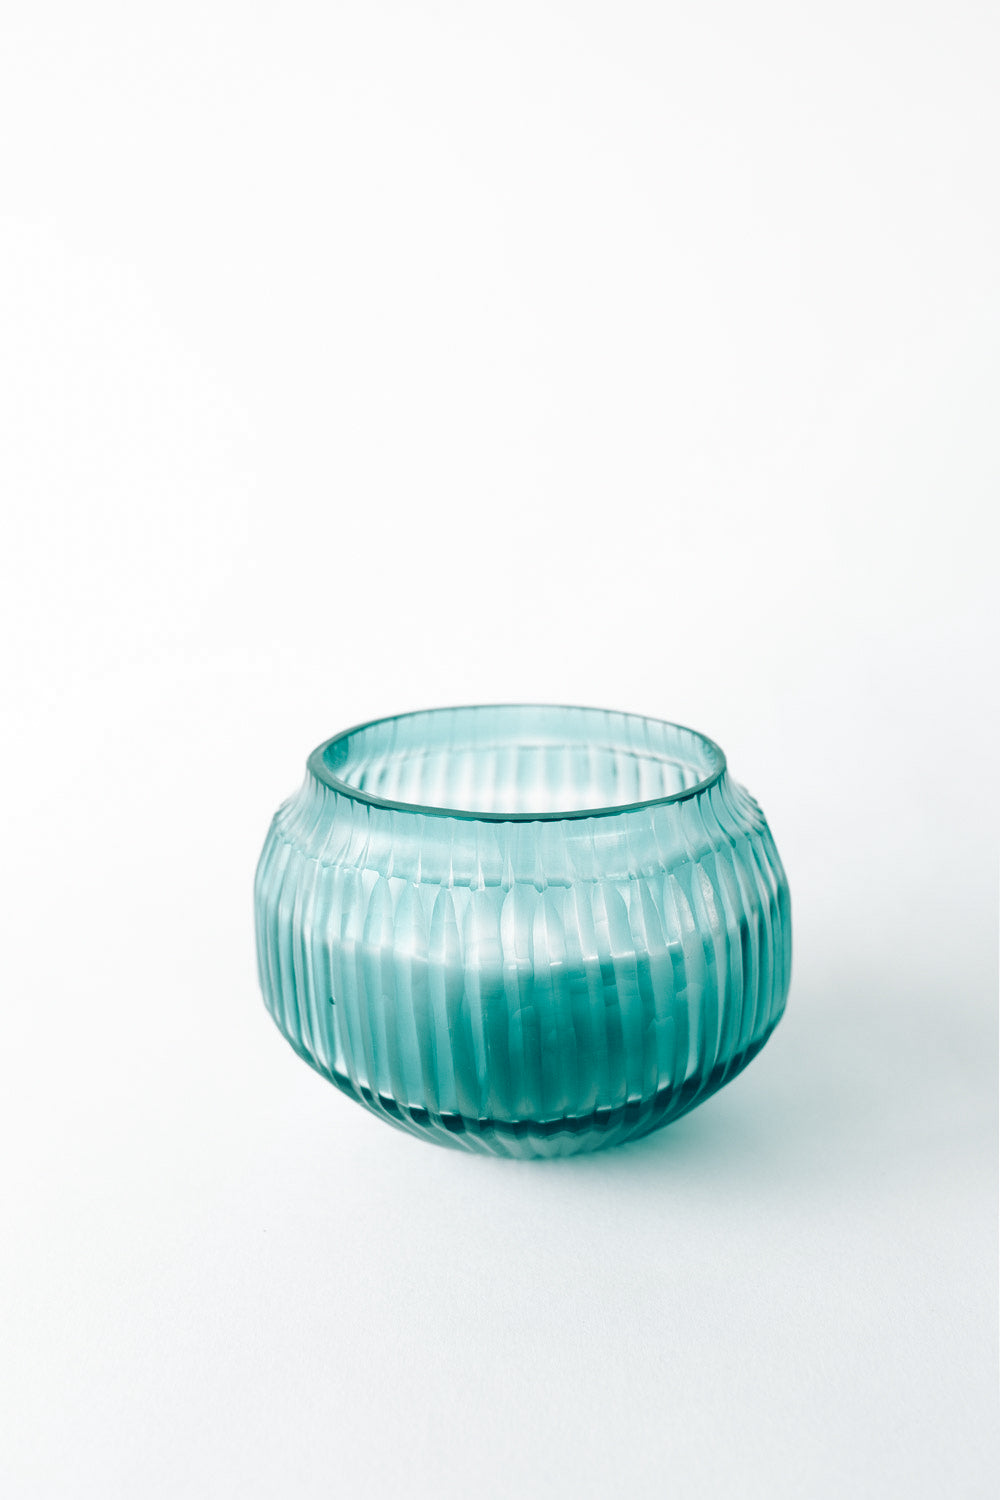 Brian Tunks Cut Glass Vase, Mini